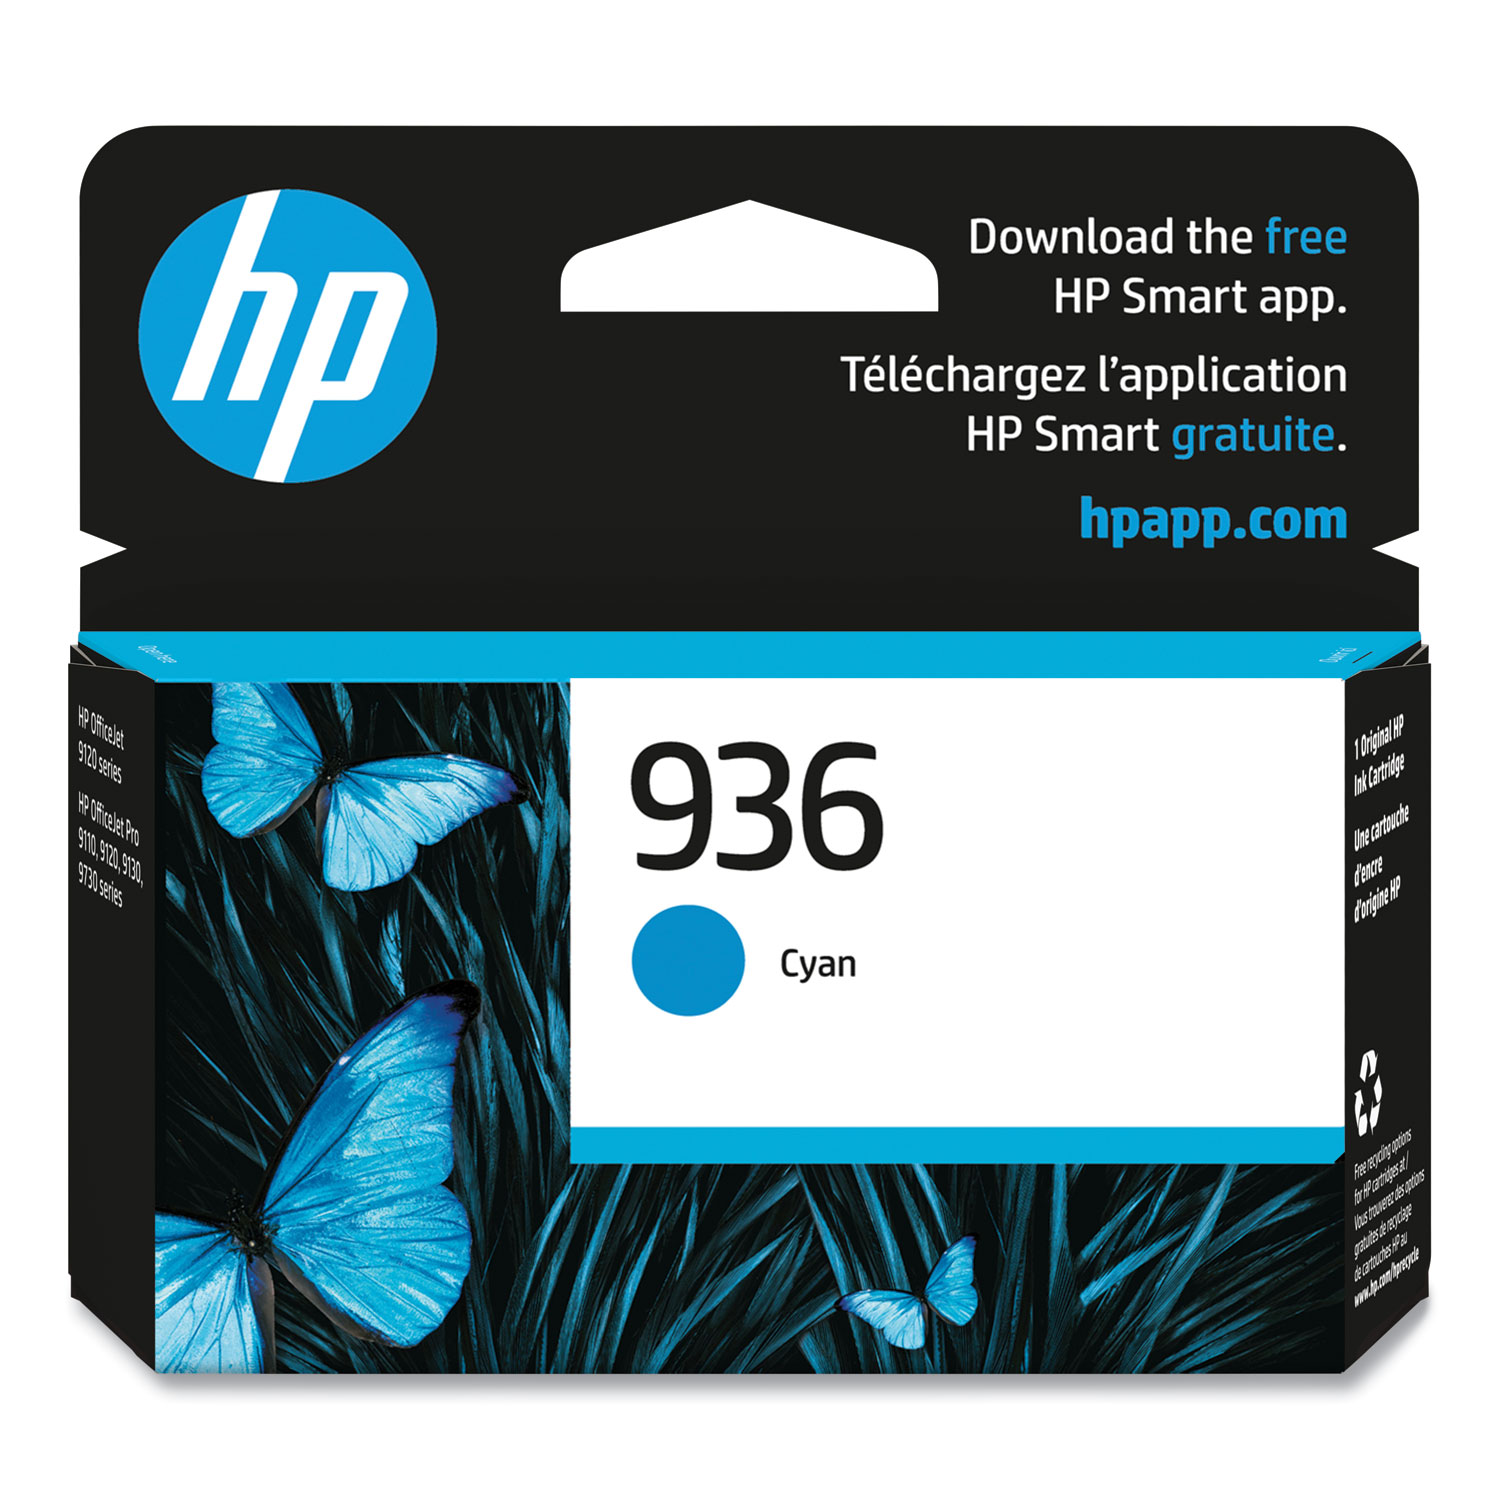 HP 953 pack 2 black cartridges + 3 colour cartridges for inkjet